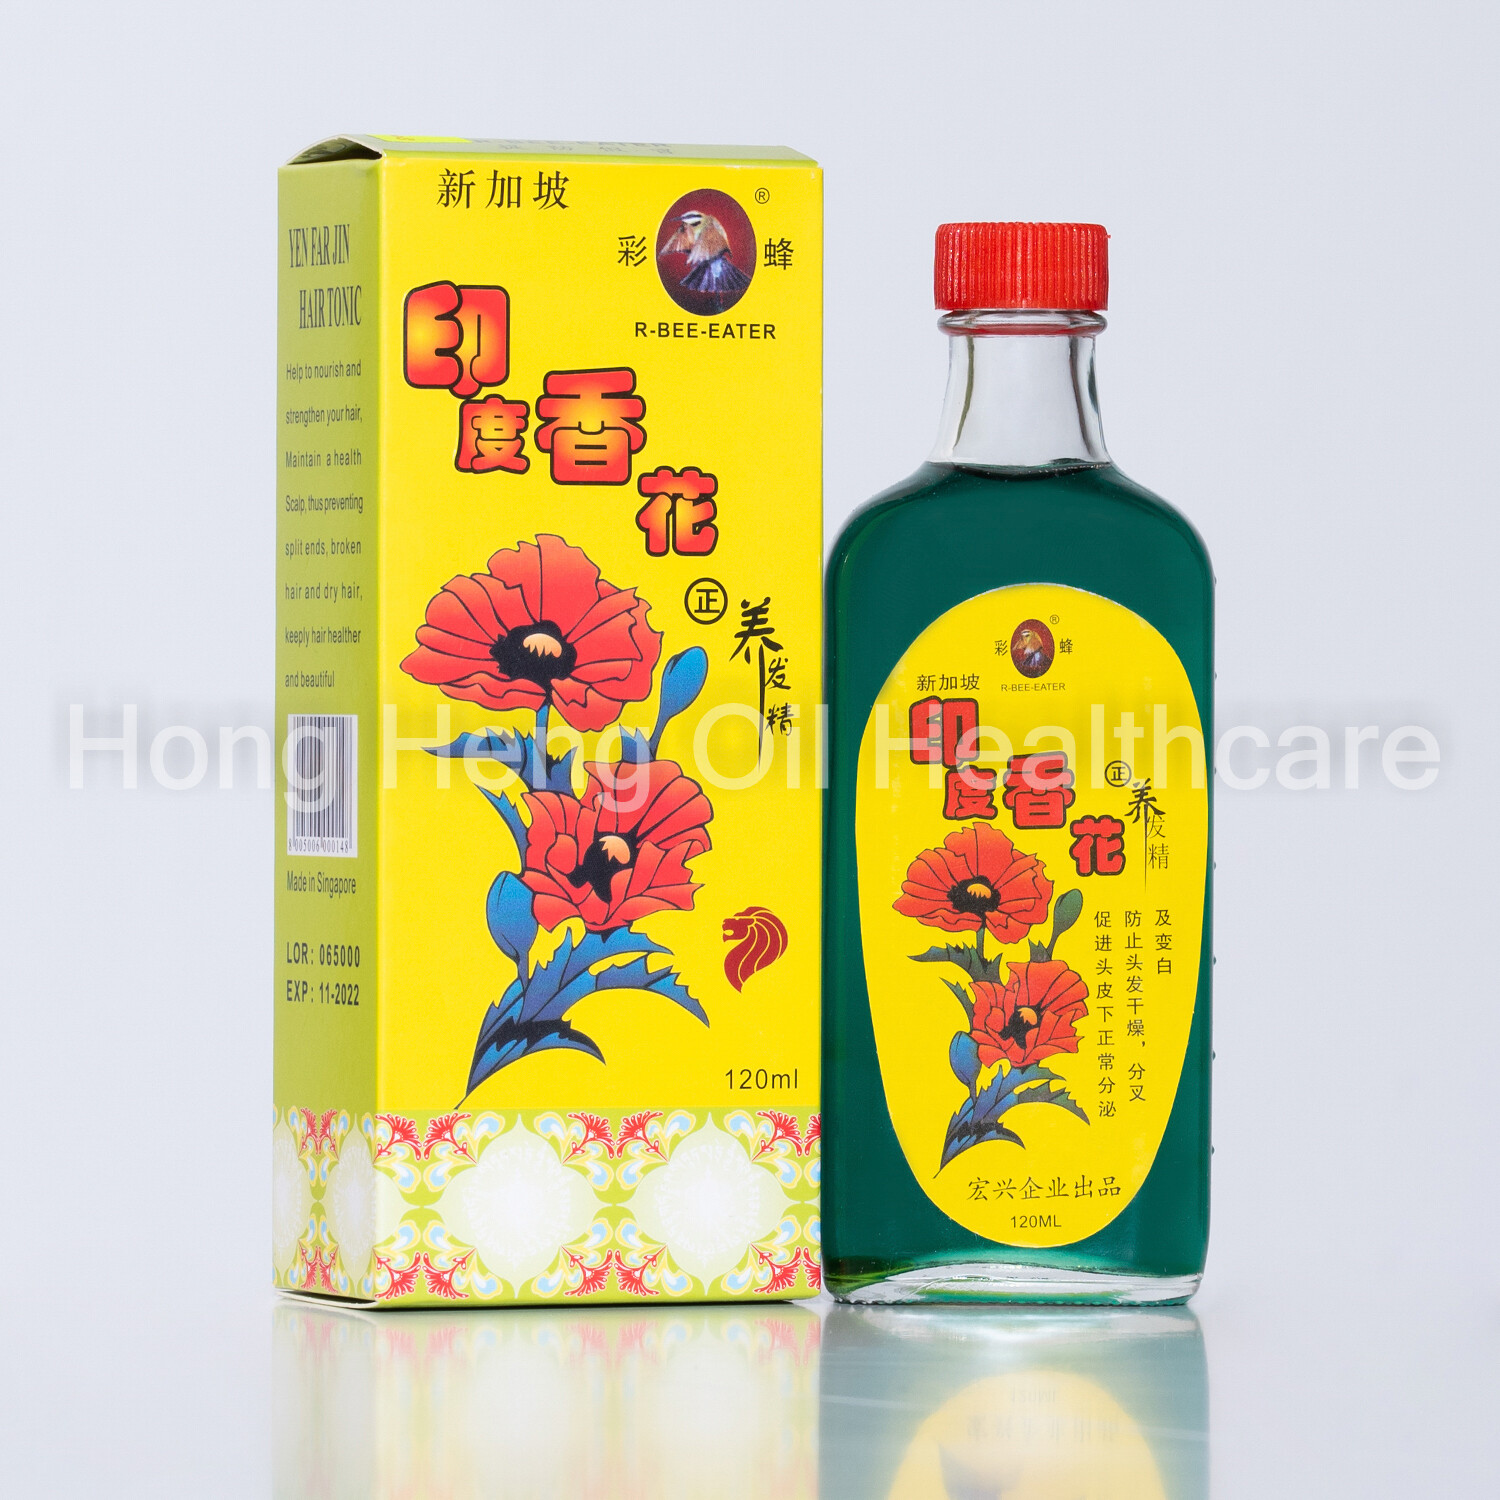 R Bee Eater Brand YEN FAR JIN HAIR TONIC OIL 新加坡彩蜂标印度香花养发精 (120ml)** No Packaging Box Just Oil Bottle ONLY!